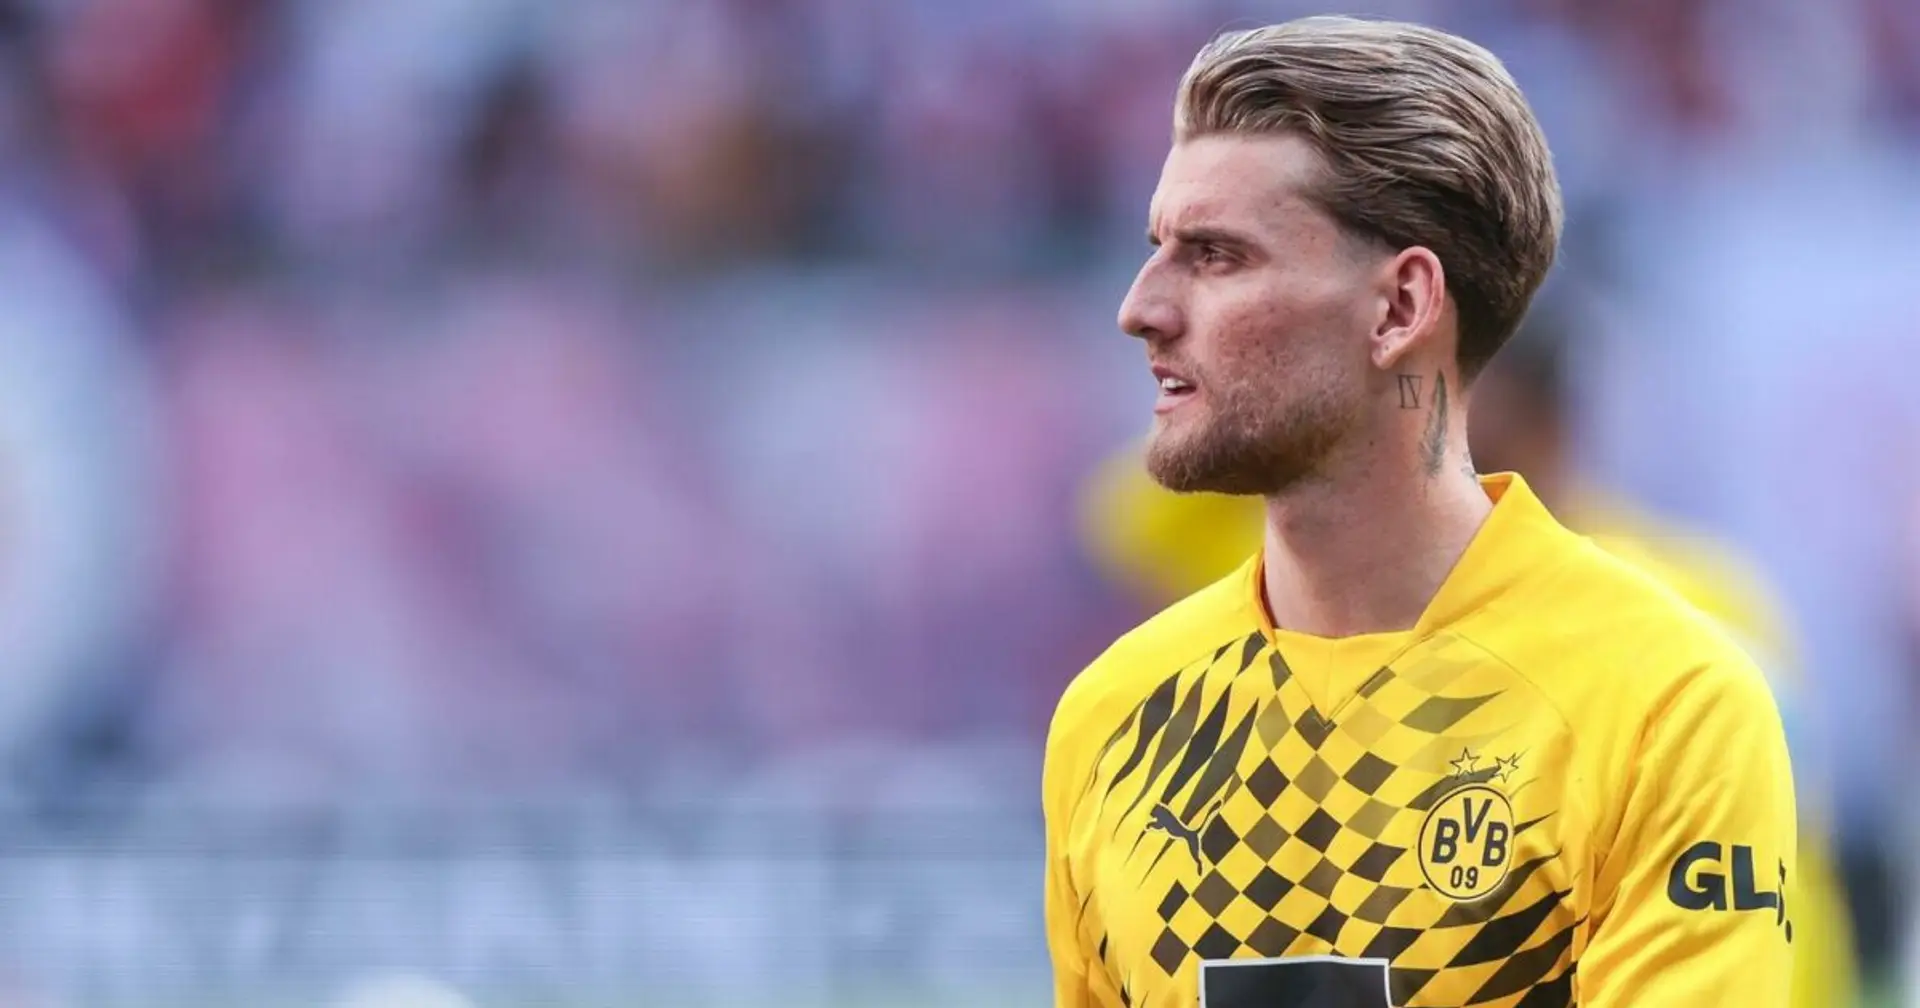 Ole Pohlmann winkt eine Chance in der Bundesliga: Mehrere Vereine zeigen großes Interesse an ihm